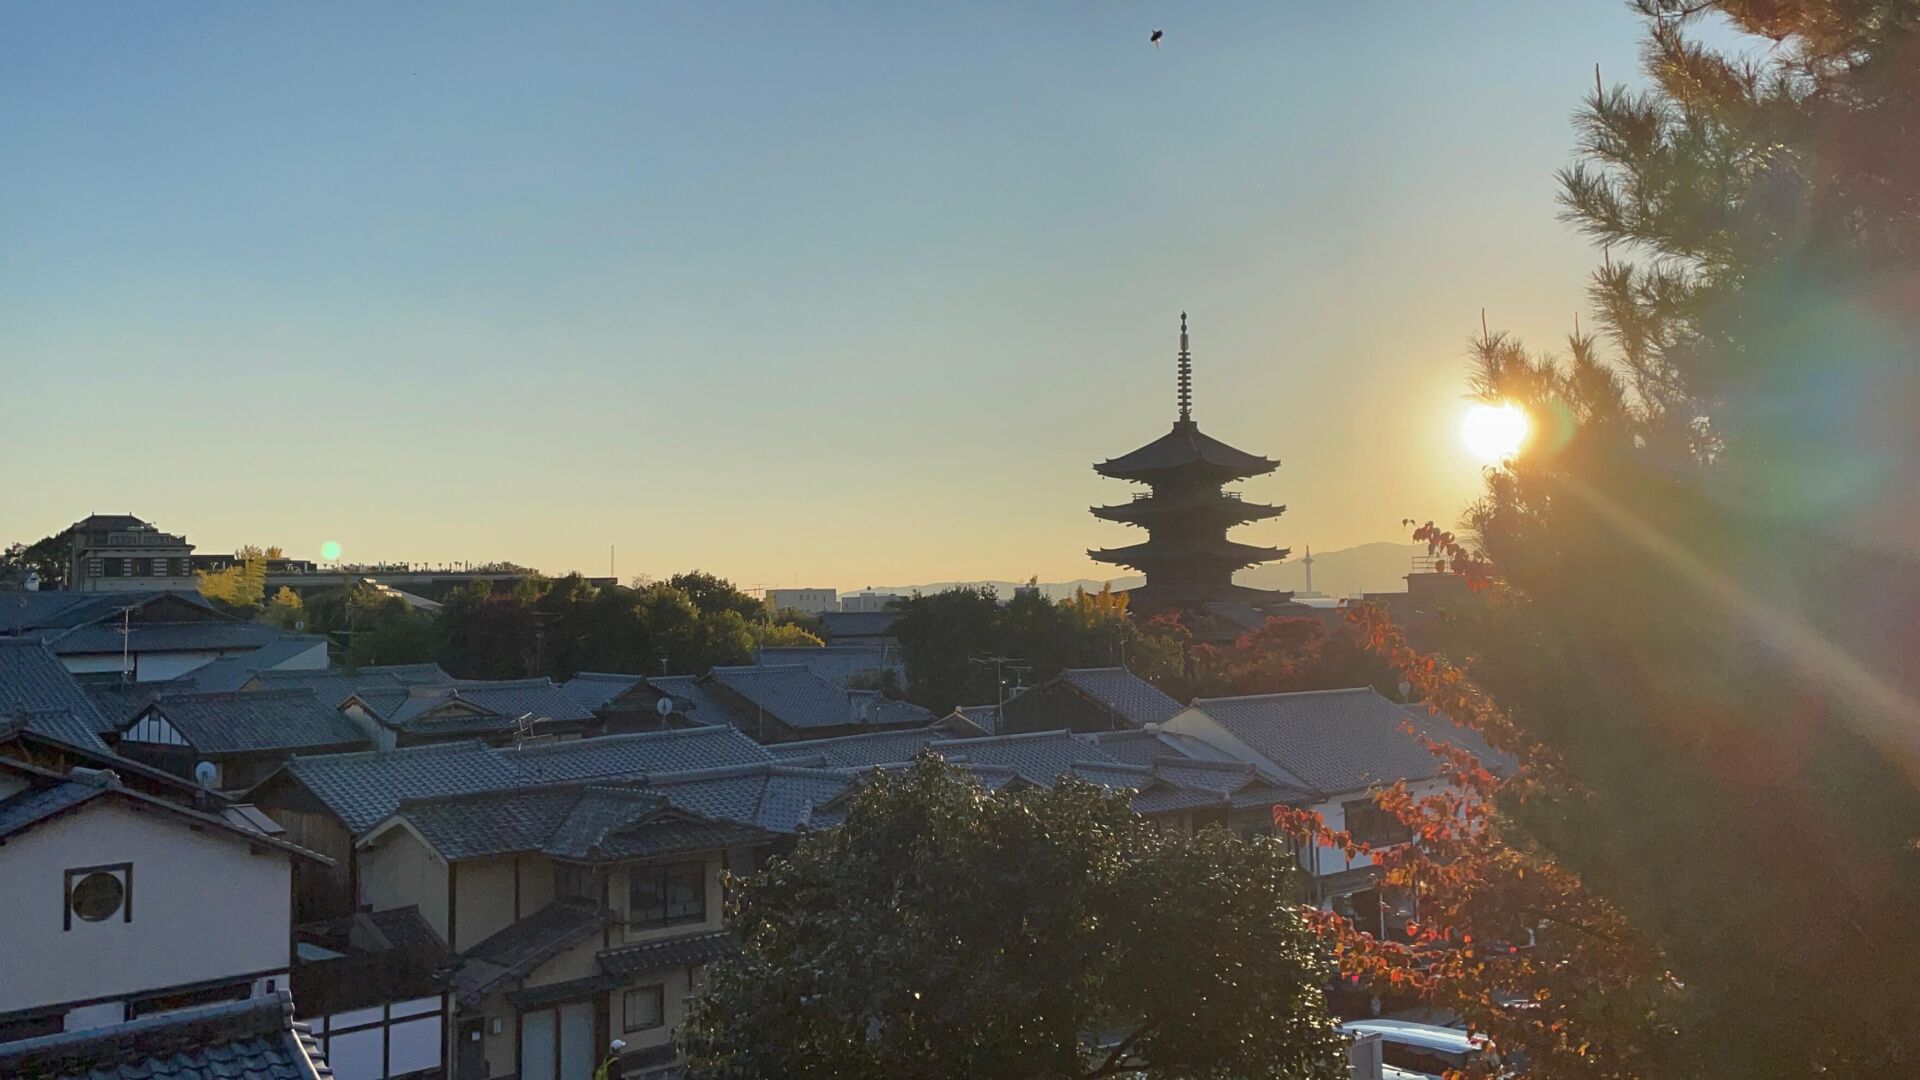 Pôr do sol Kyoto. uma árvore no canto esquerdo esconde parcialmente o sol, ao lado os contornos de uma pagoda e o telhado de algumas casas.